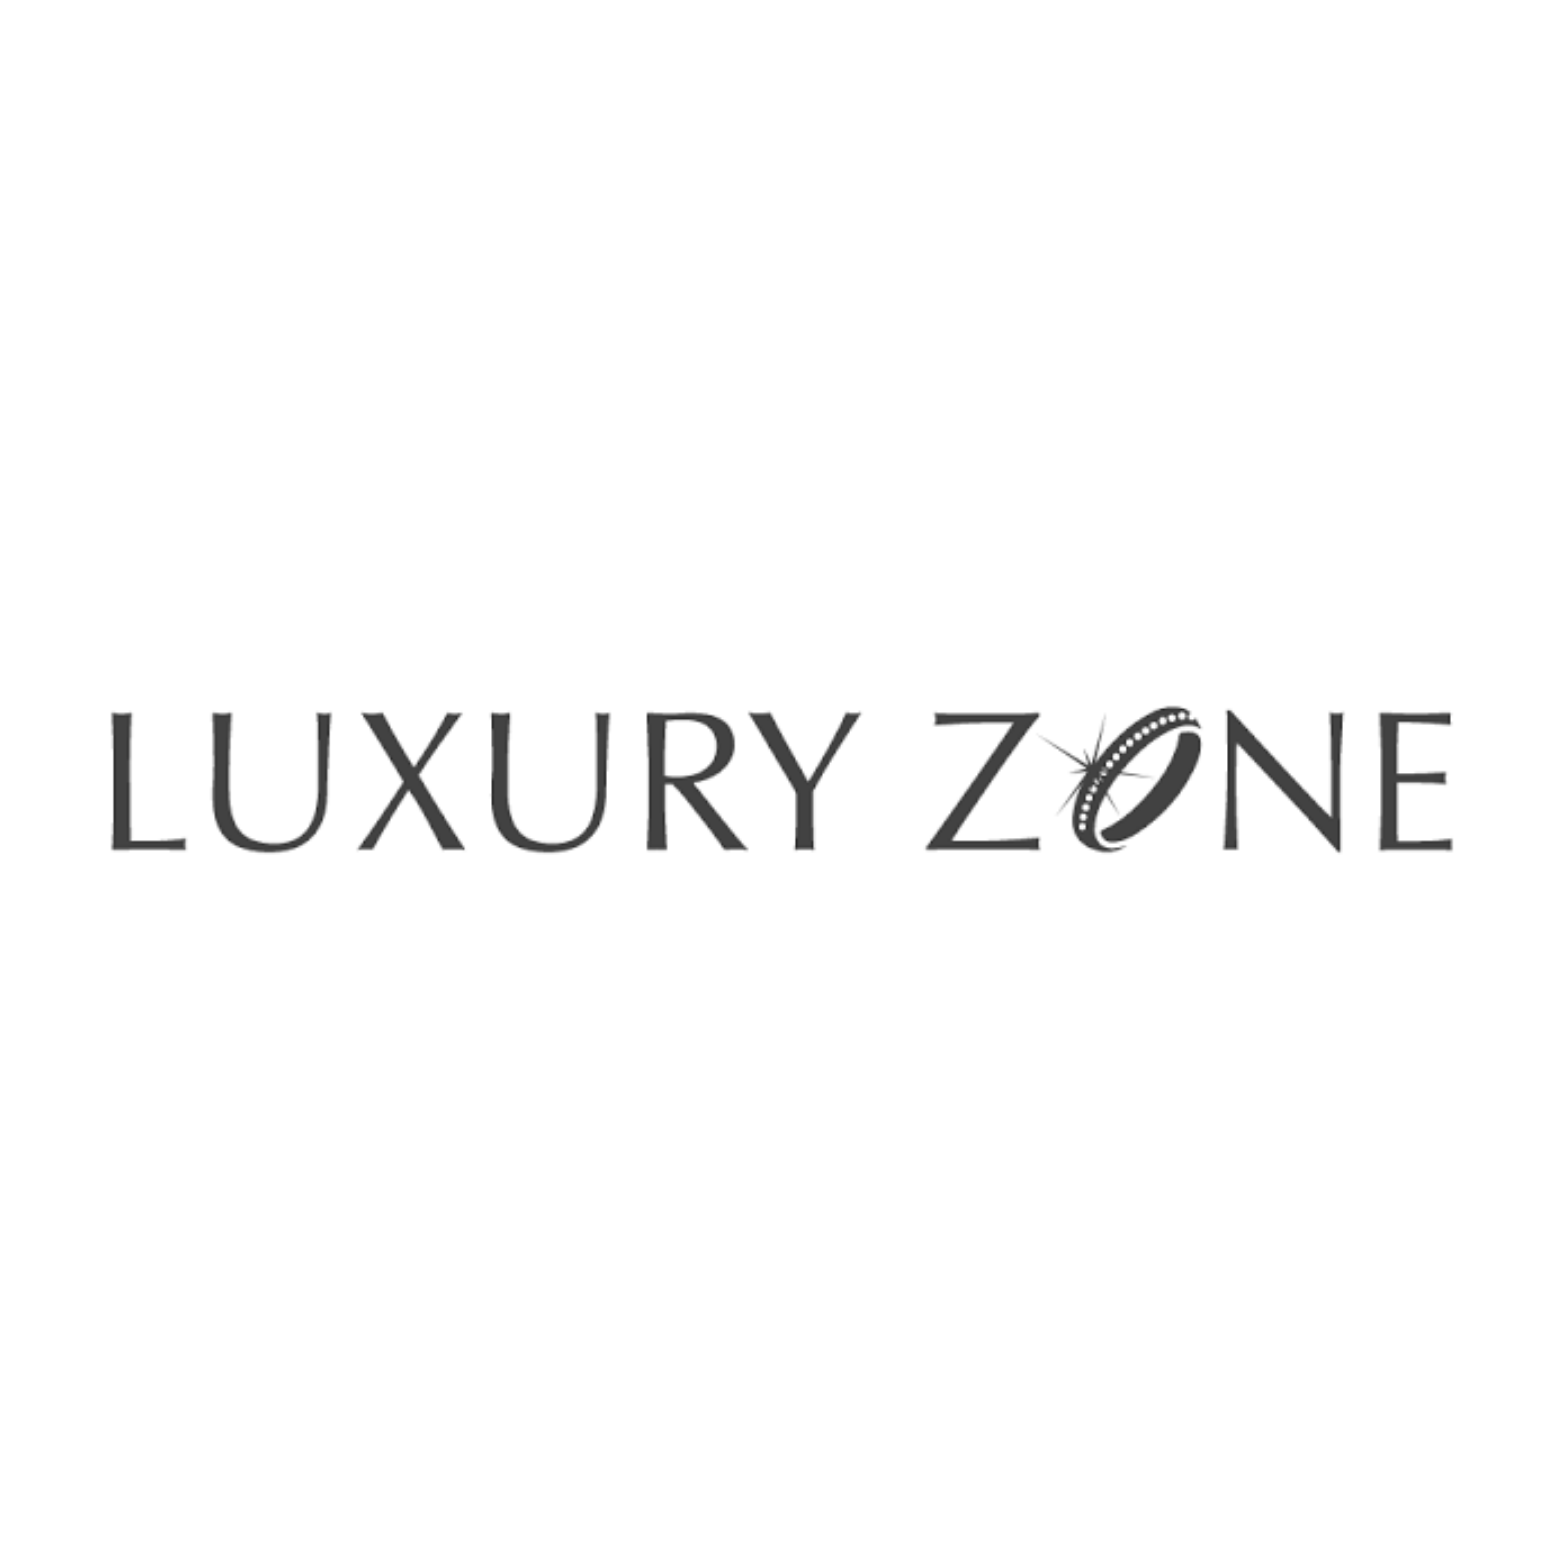 Luxury Zones